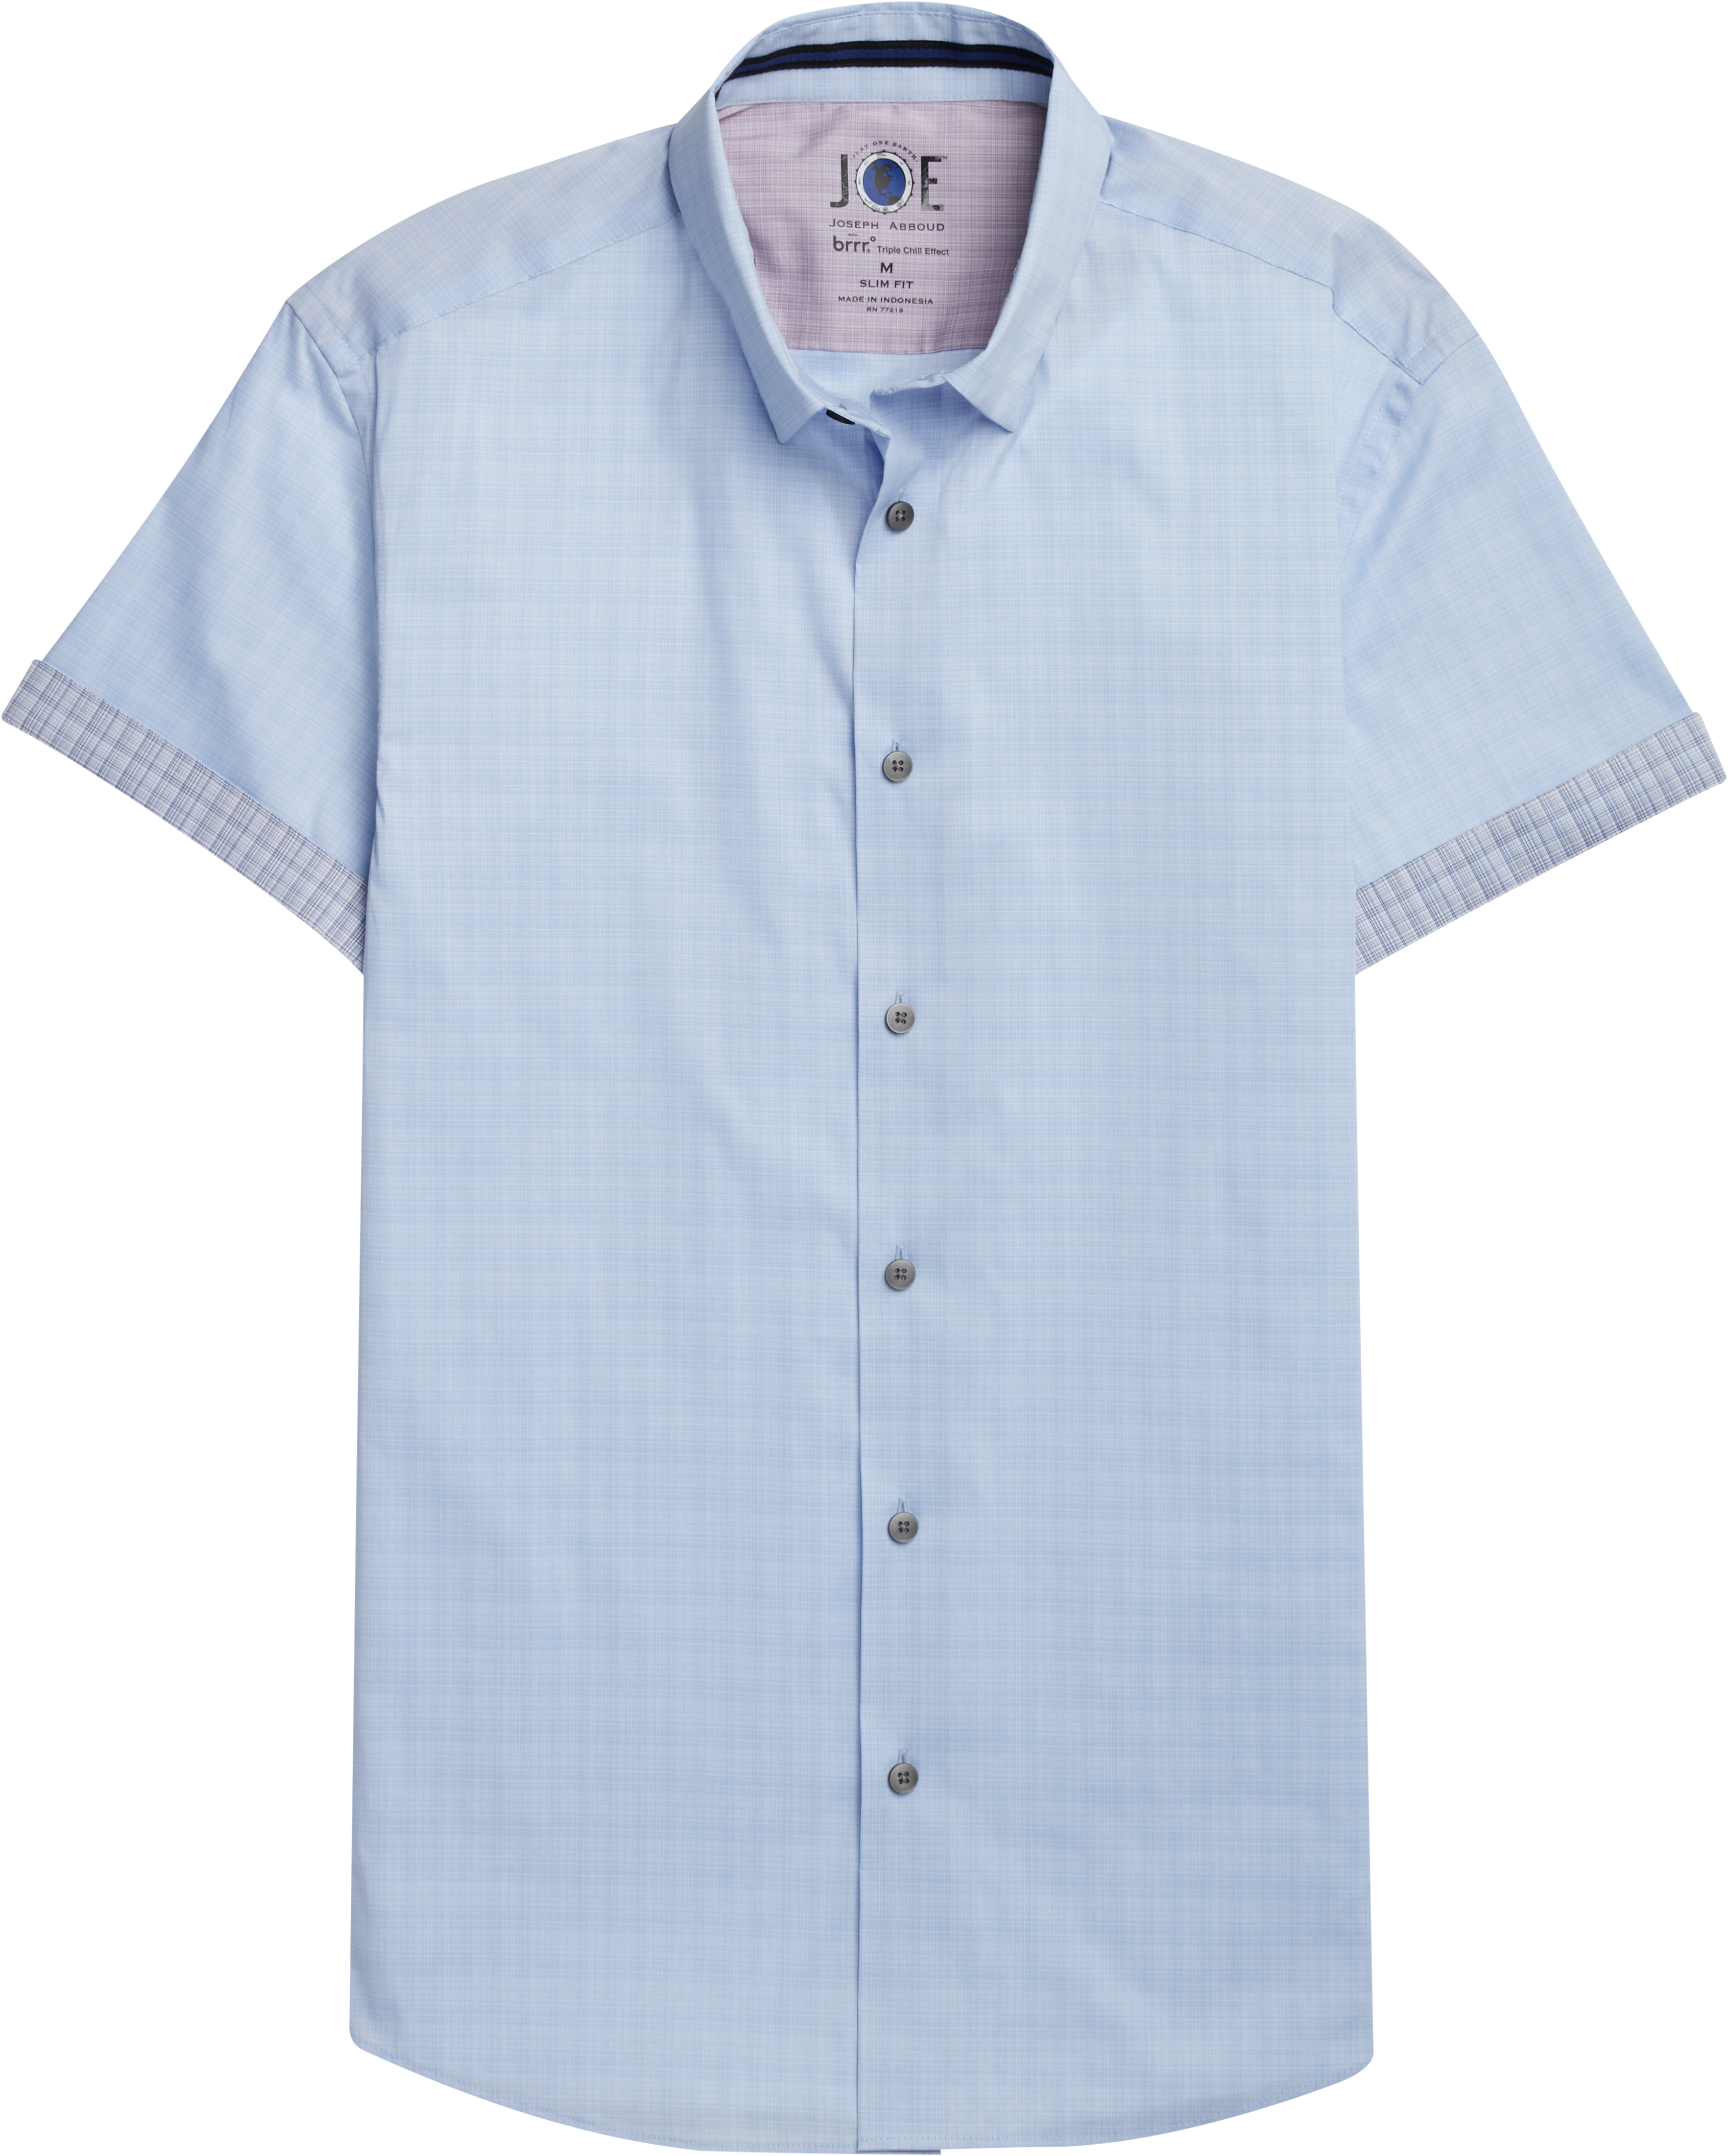 JOE Joseph Abboud Brrr° Light Blue Short Sleeve Sport Shirt - Men's ...